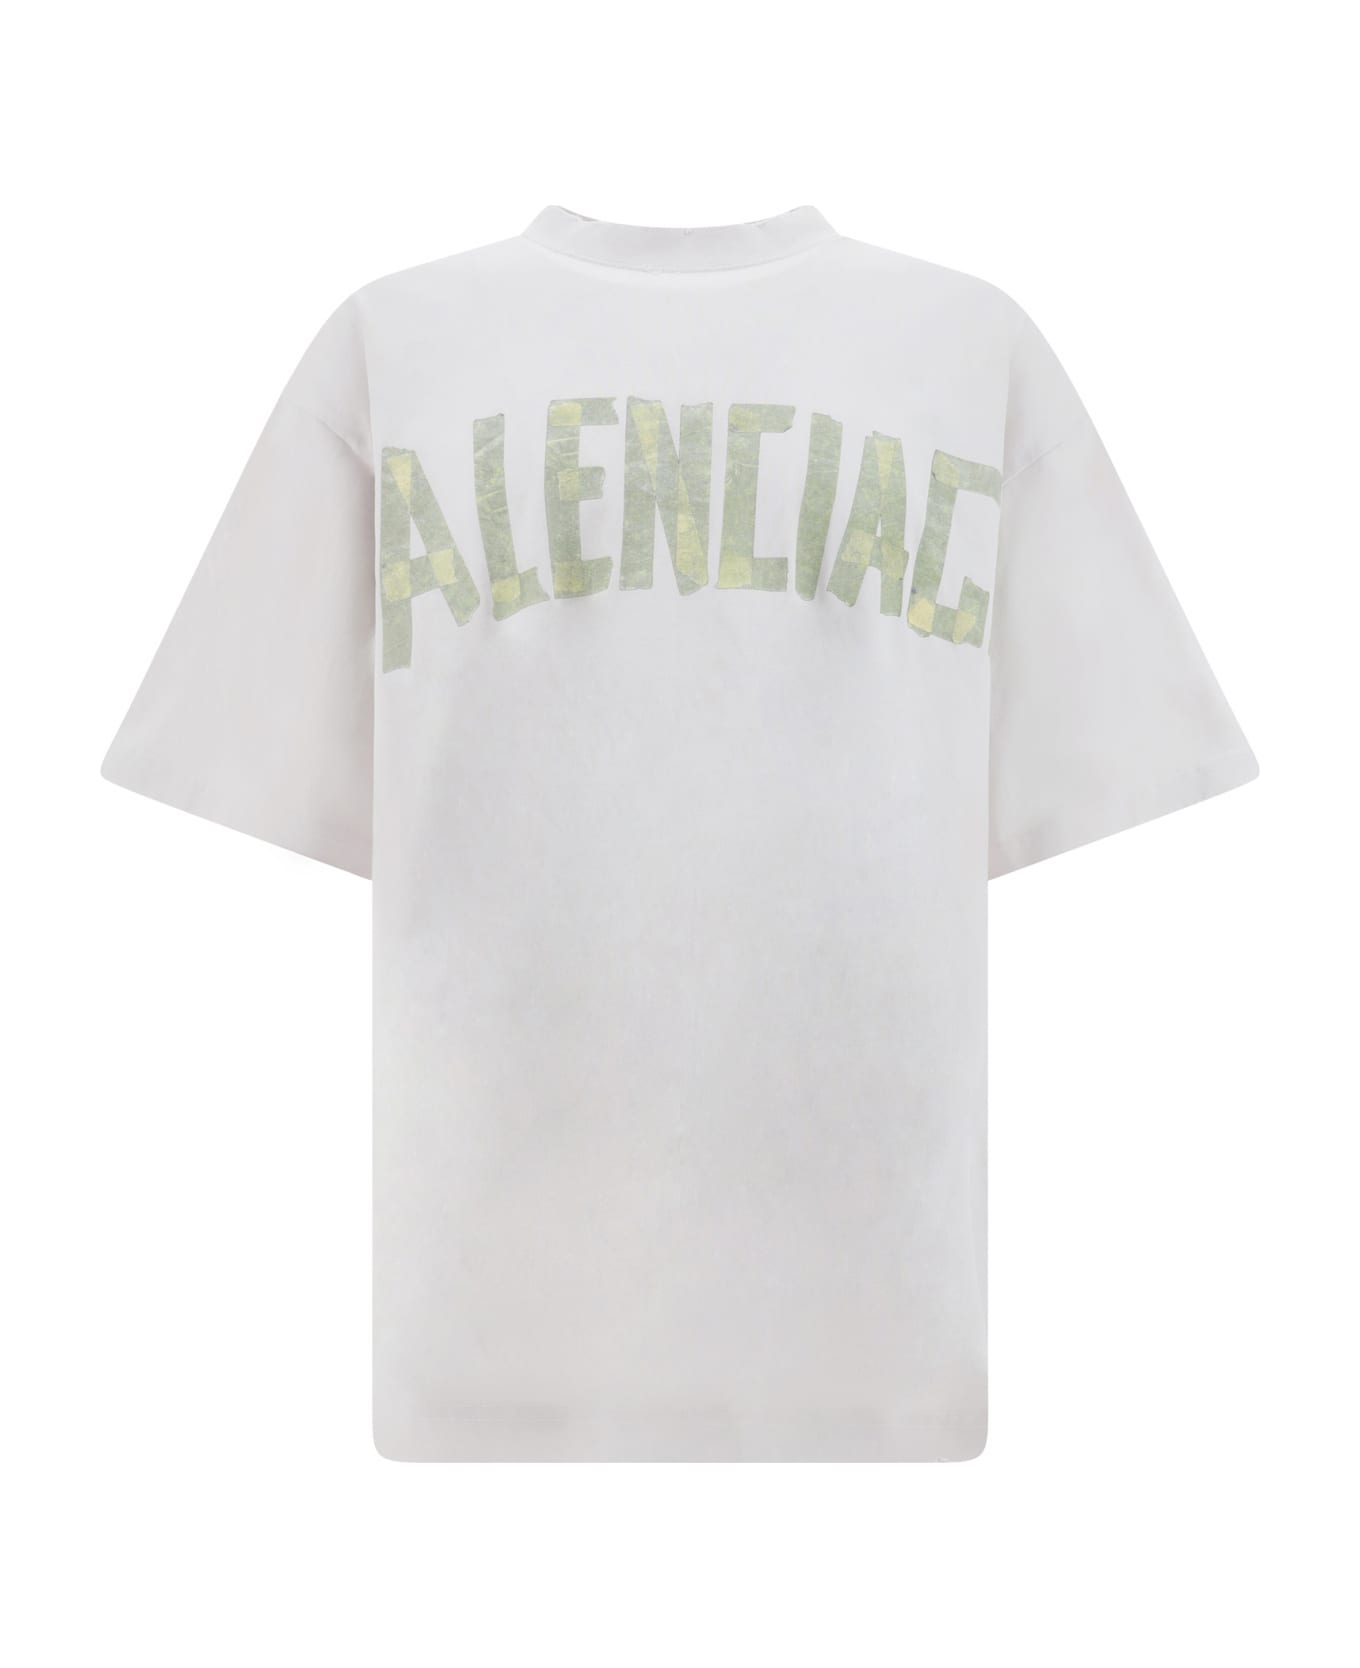 Balenciaga Tape Type T-shirt - White